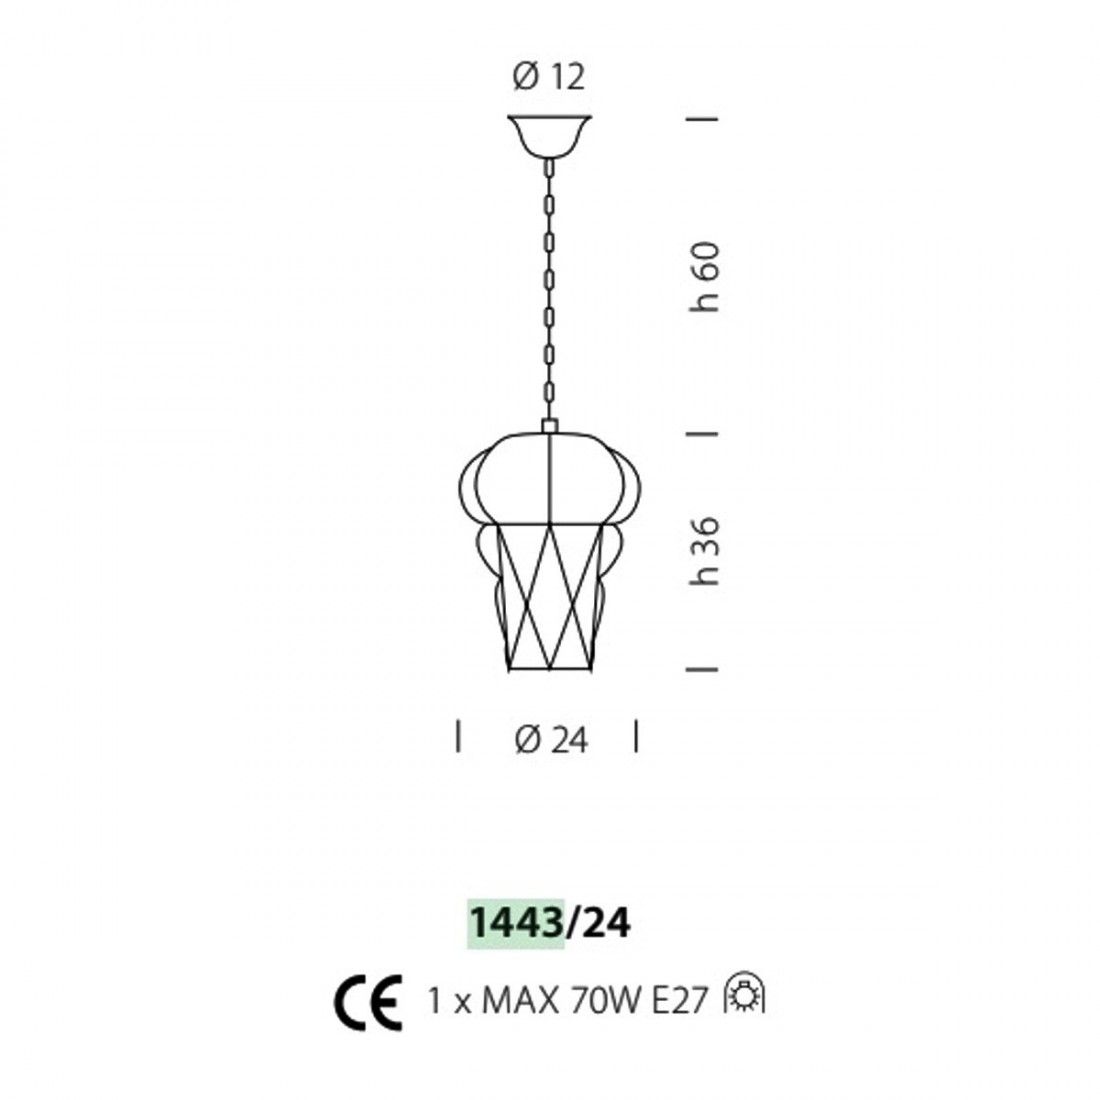 Sospensione SY-TIEPOLO 1443 24 E27 LED INOX acciaio classico vetro soffiato Murano lampadario artigianale interno